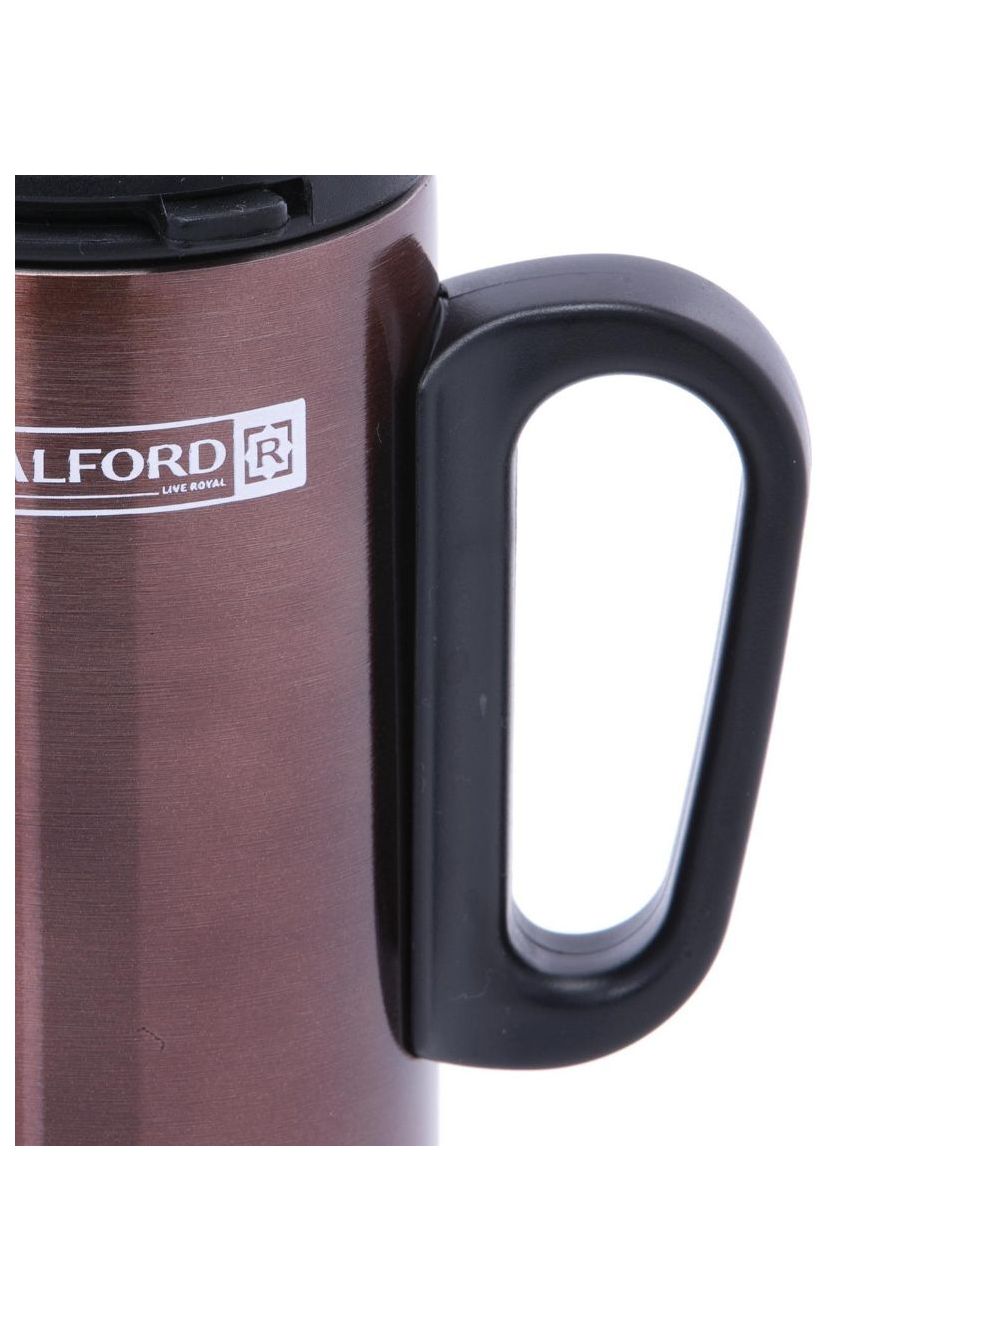 Royalford Coffee Mug 250 ml